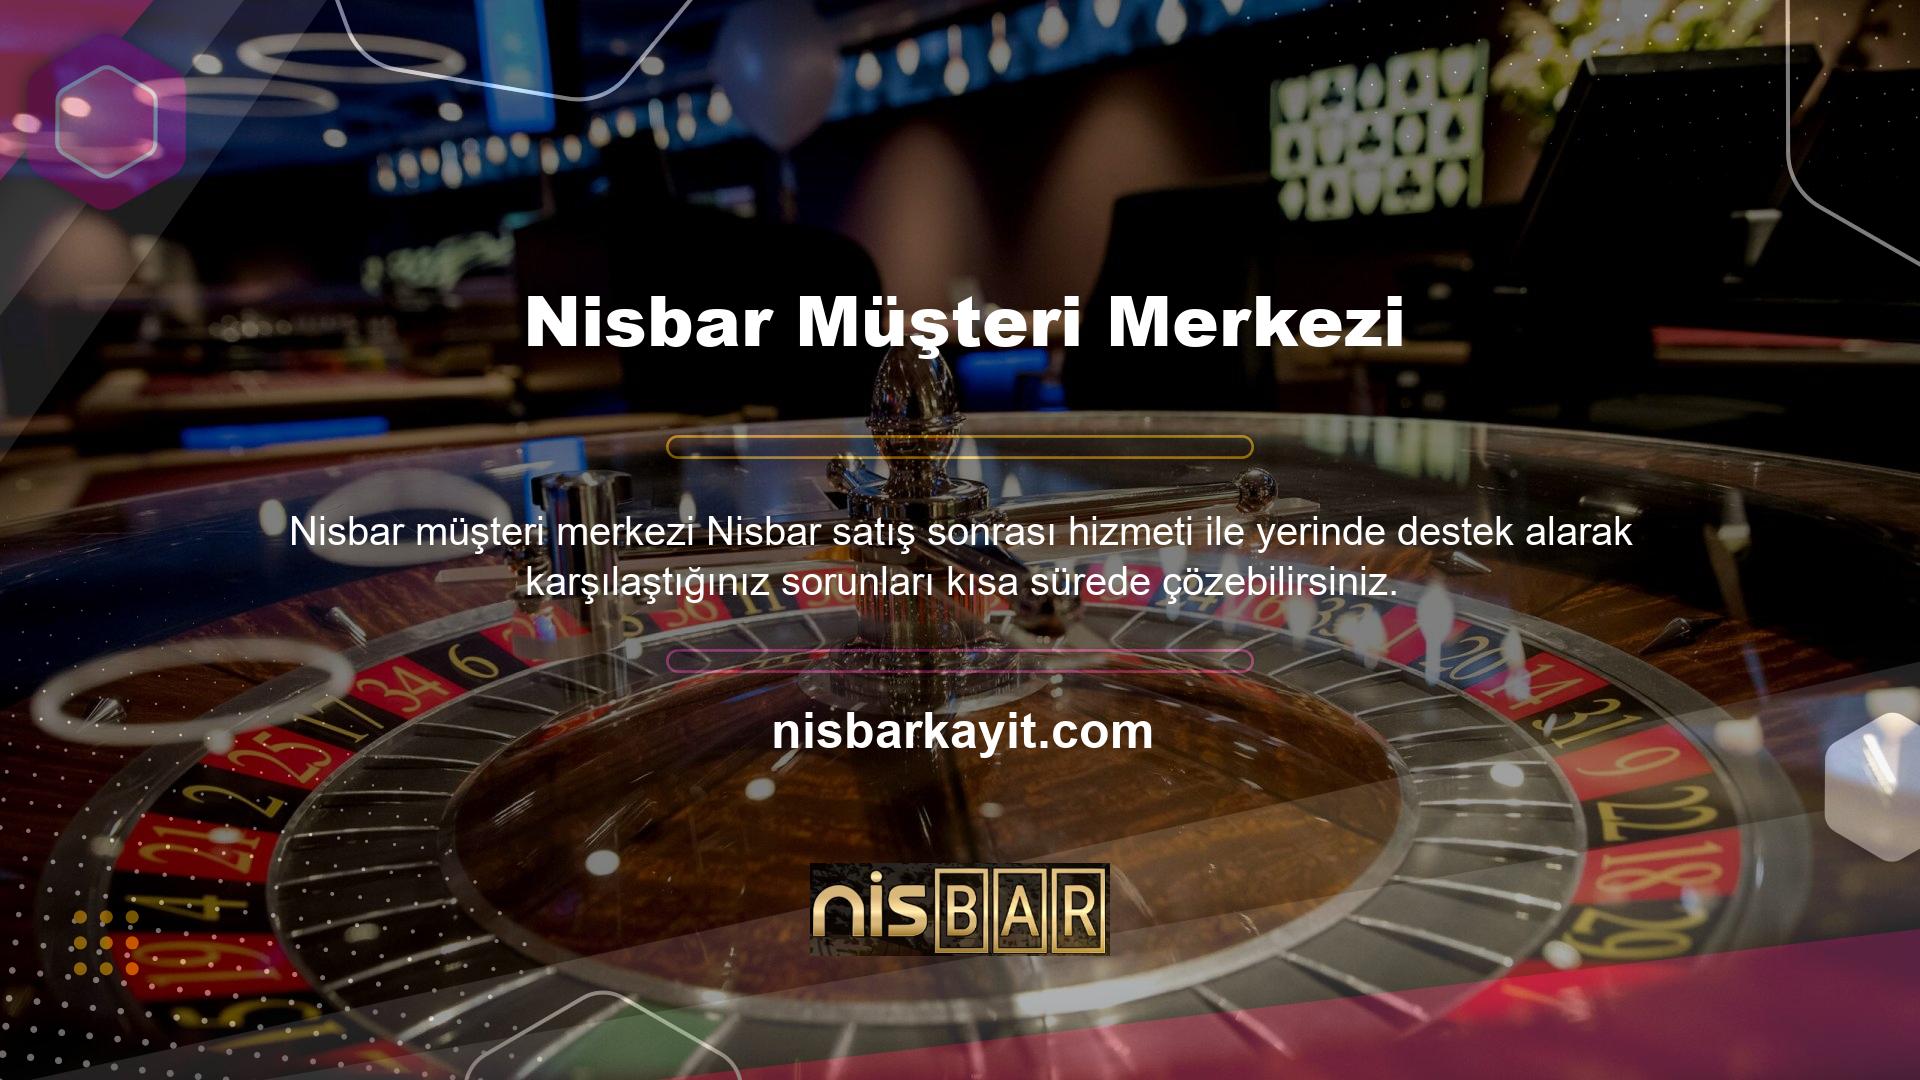 Nisbar çevrimiçi yardım personeli, deneyime sahiptir, bu nedenle web sitenize odaklanma süreci çok hızlı ve sorunsuzdur